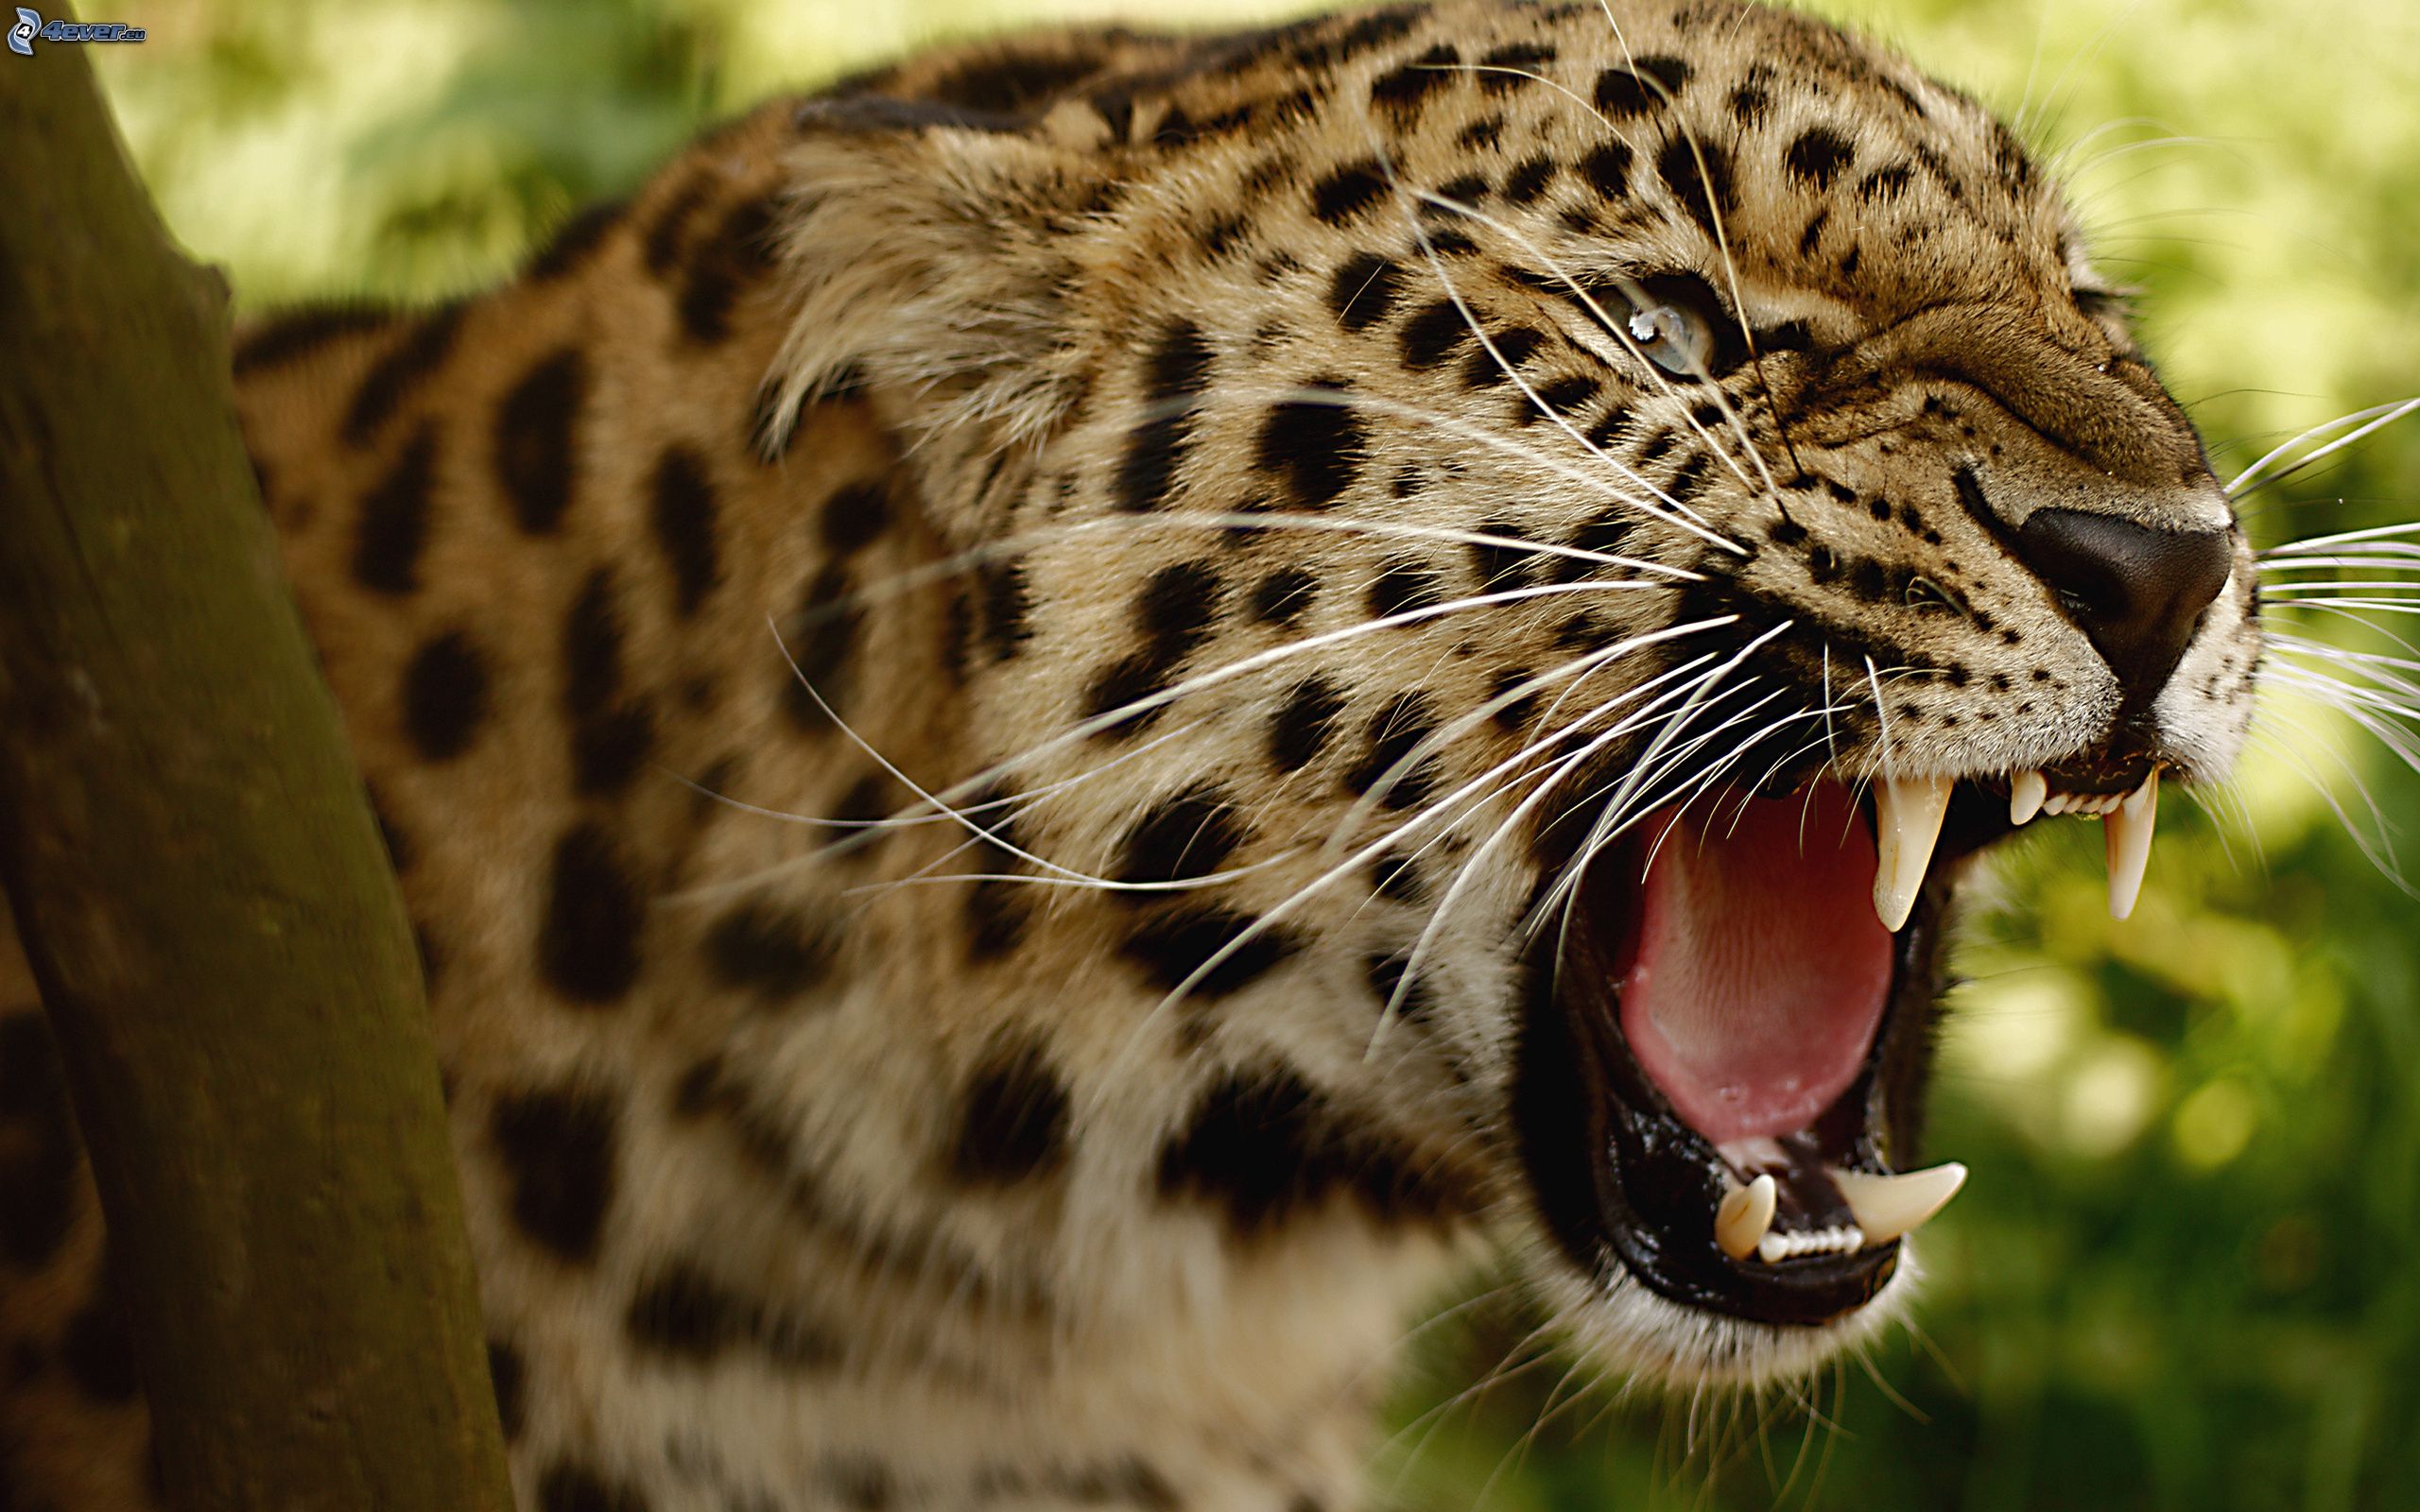 Jaguar vs Pantera Puma vs Leopardo vs Guepardo. ¿Quién gana? - Forocoches